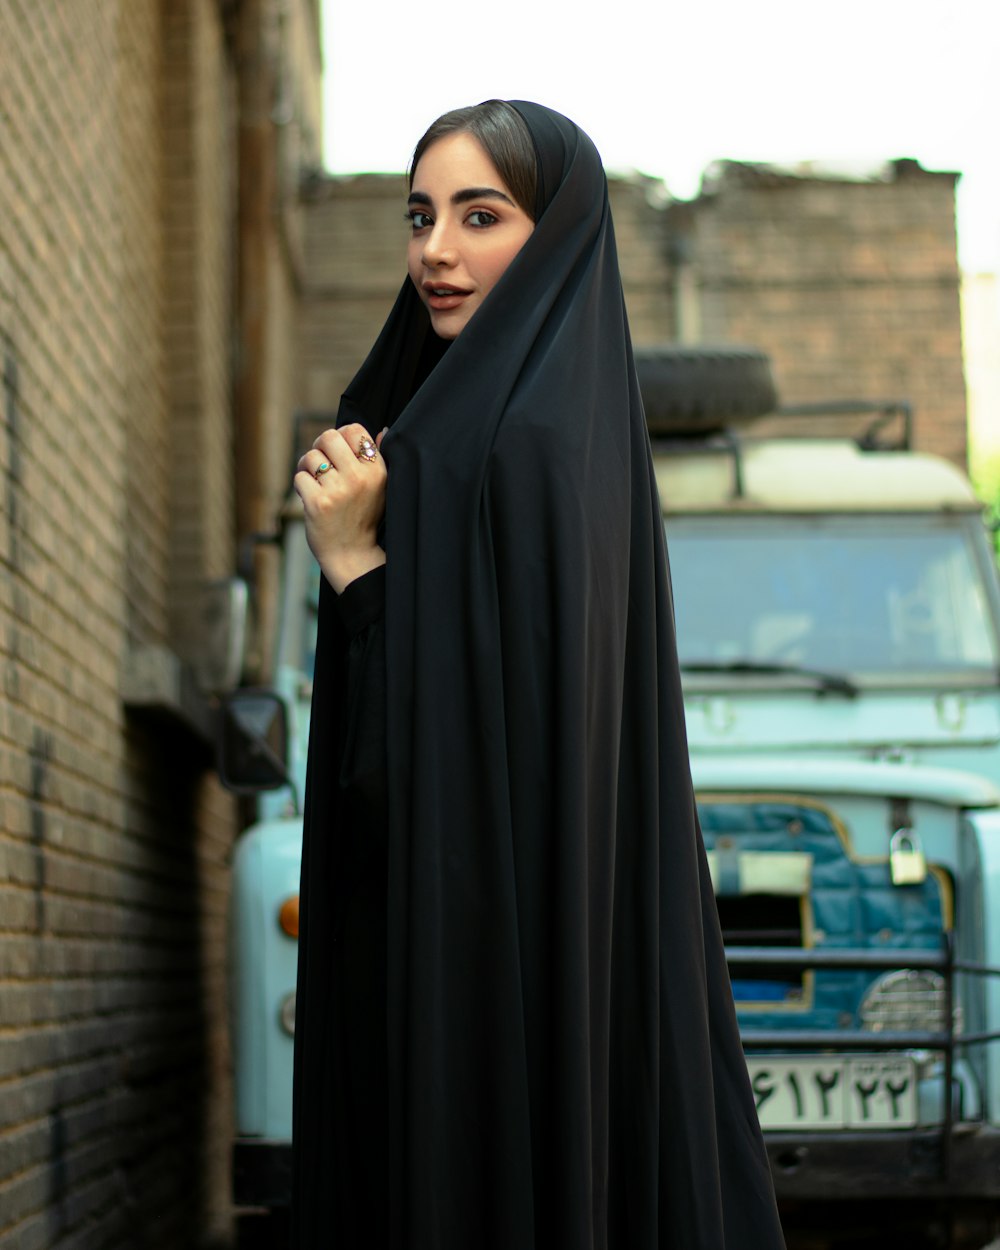 Frau im schwarzen Hijab steht tagsüber in der Nähe des Gebäudes